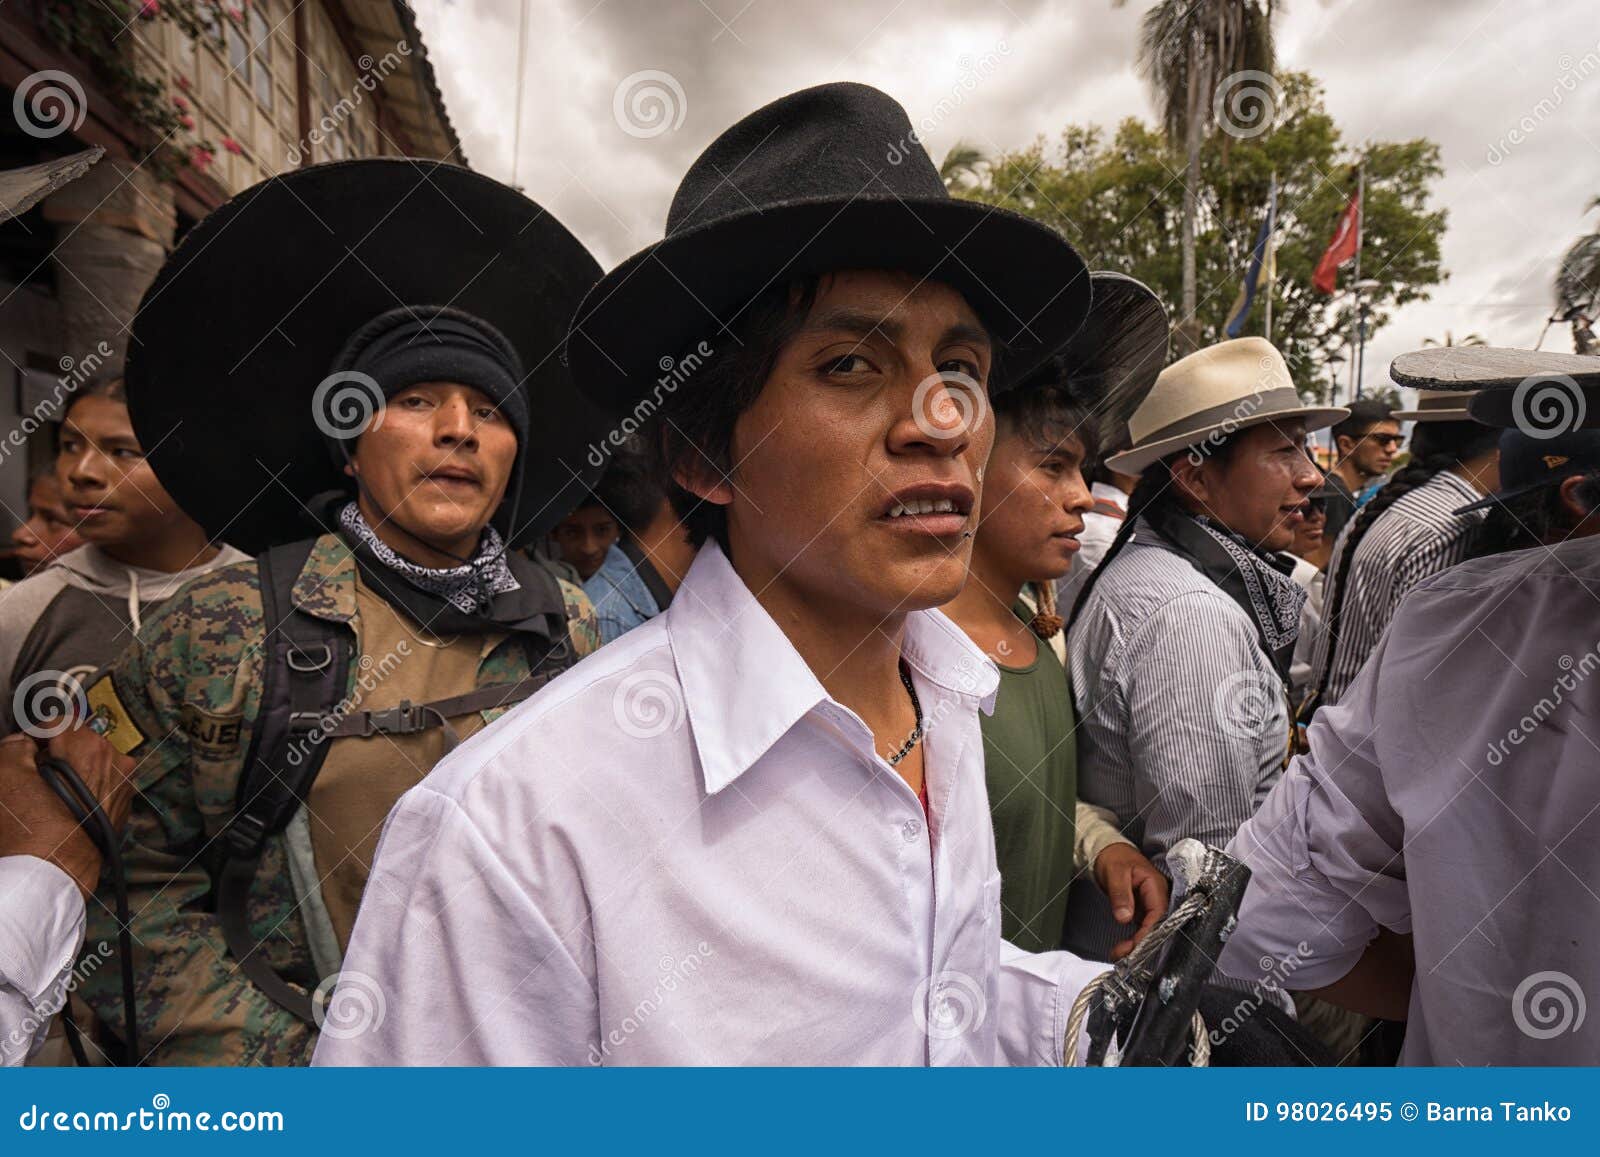 closeup-quechua-men-outdoors-june-cotacachi-ecuador-indigenous-kichwa-participating-parade-summer-solstice-98026495.jpg